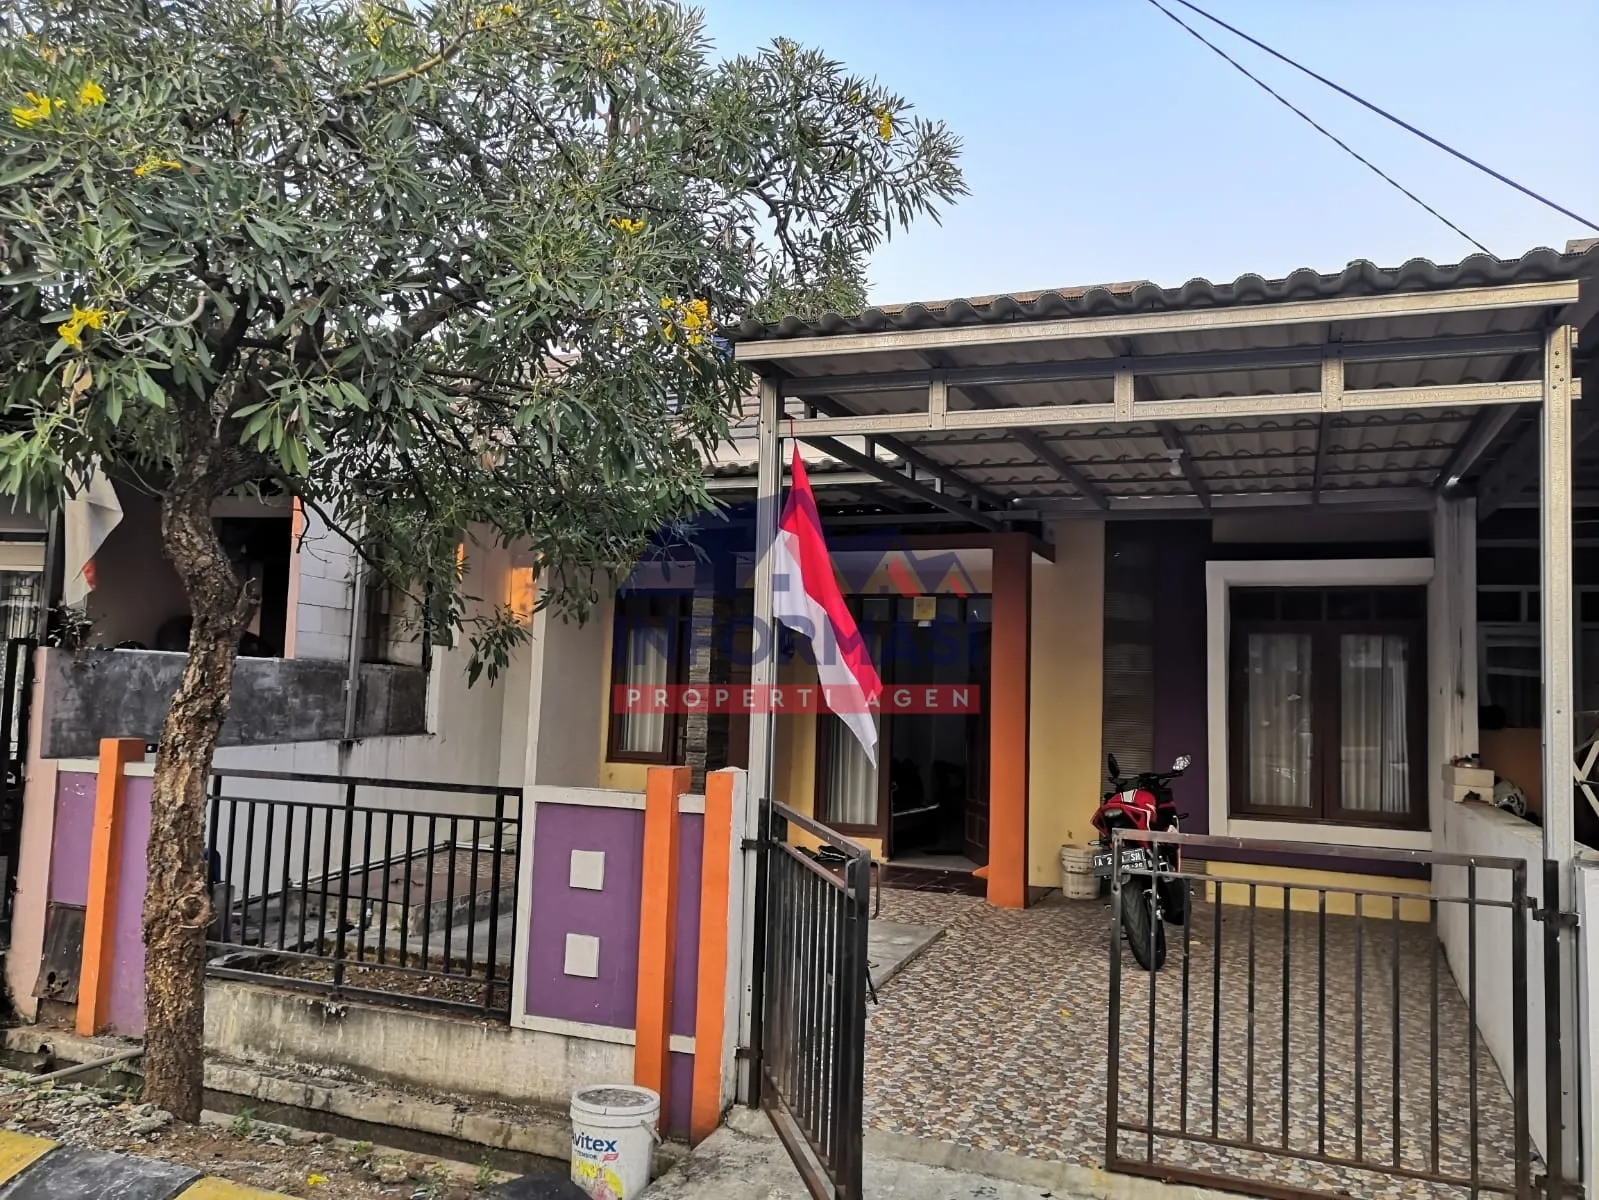 Rumah Permata Tangerang